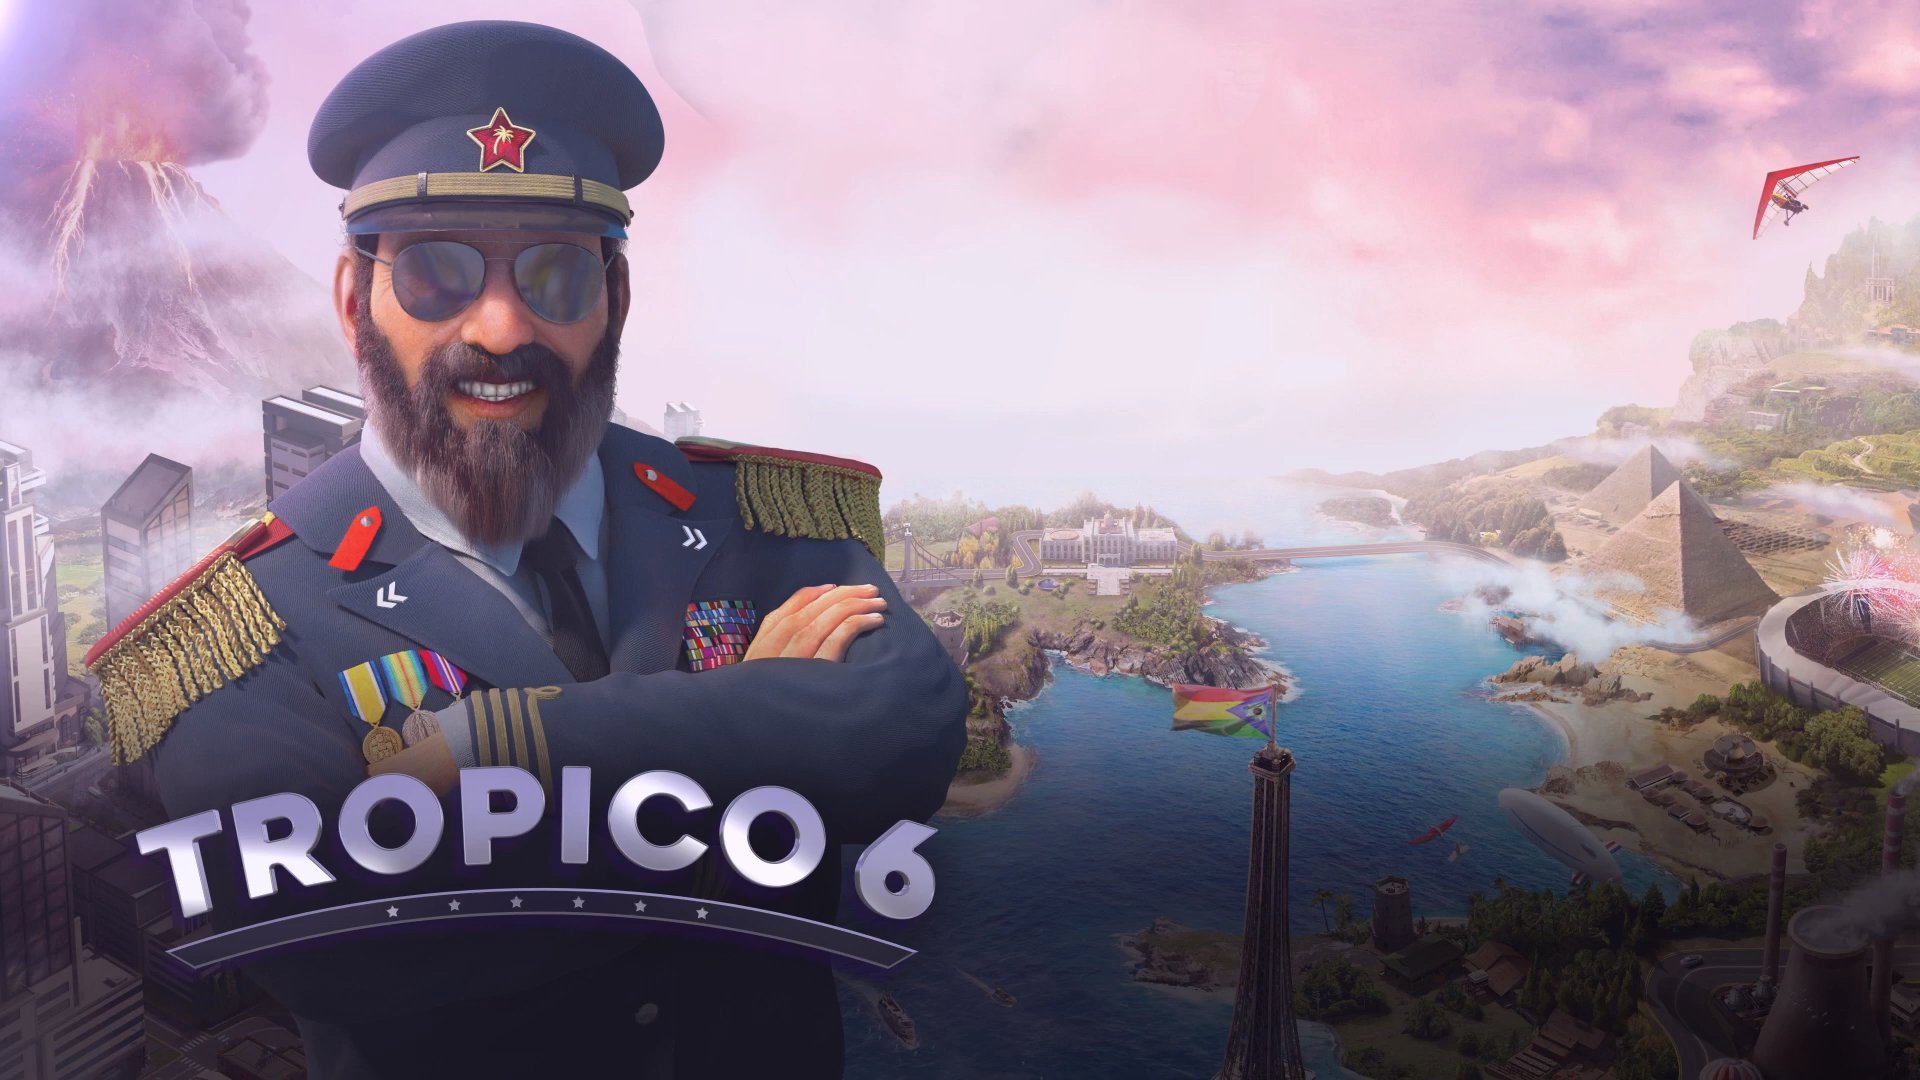 Tropico 6 Часть 7 - Освоение нового острова,туристической острасли